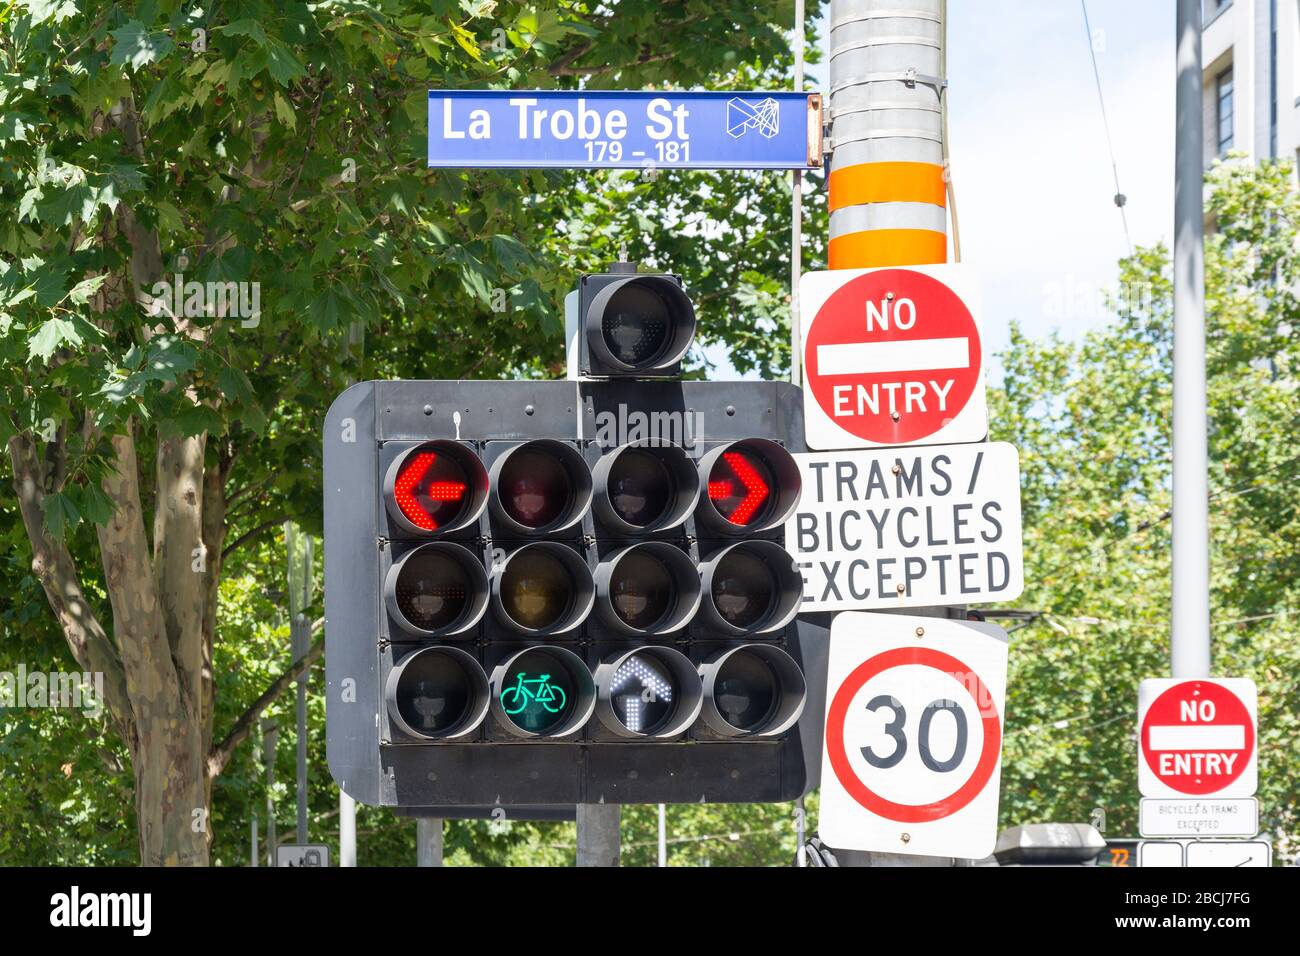 Multi traffic lights and signs, La Trobe Street, City Central, Melbourne, Victoria, Australia Stock Photo